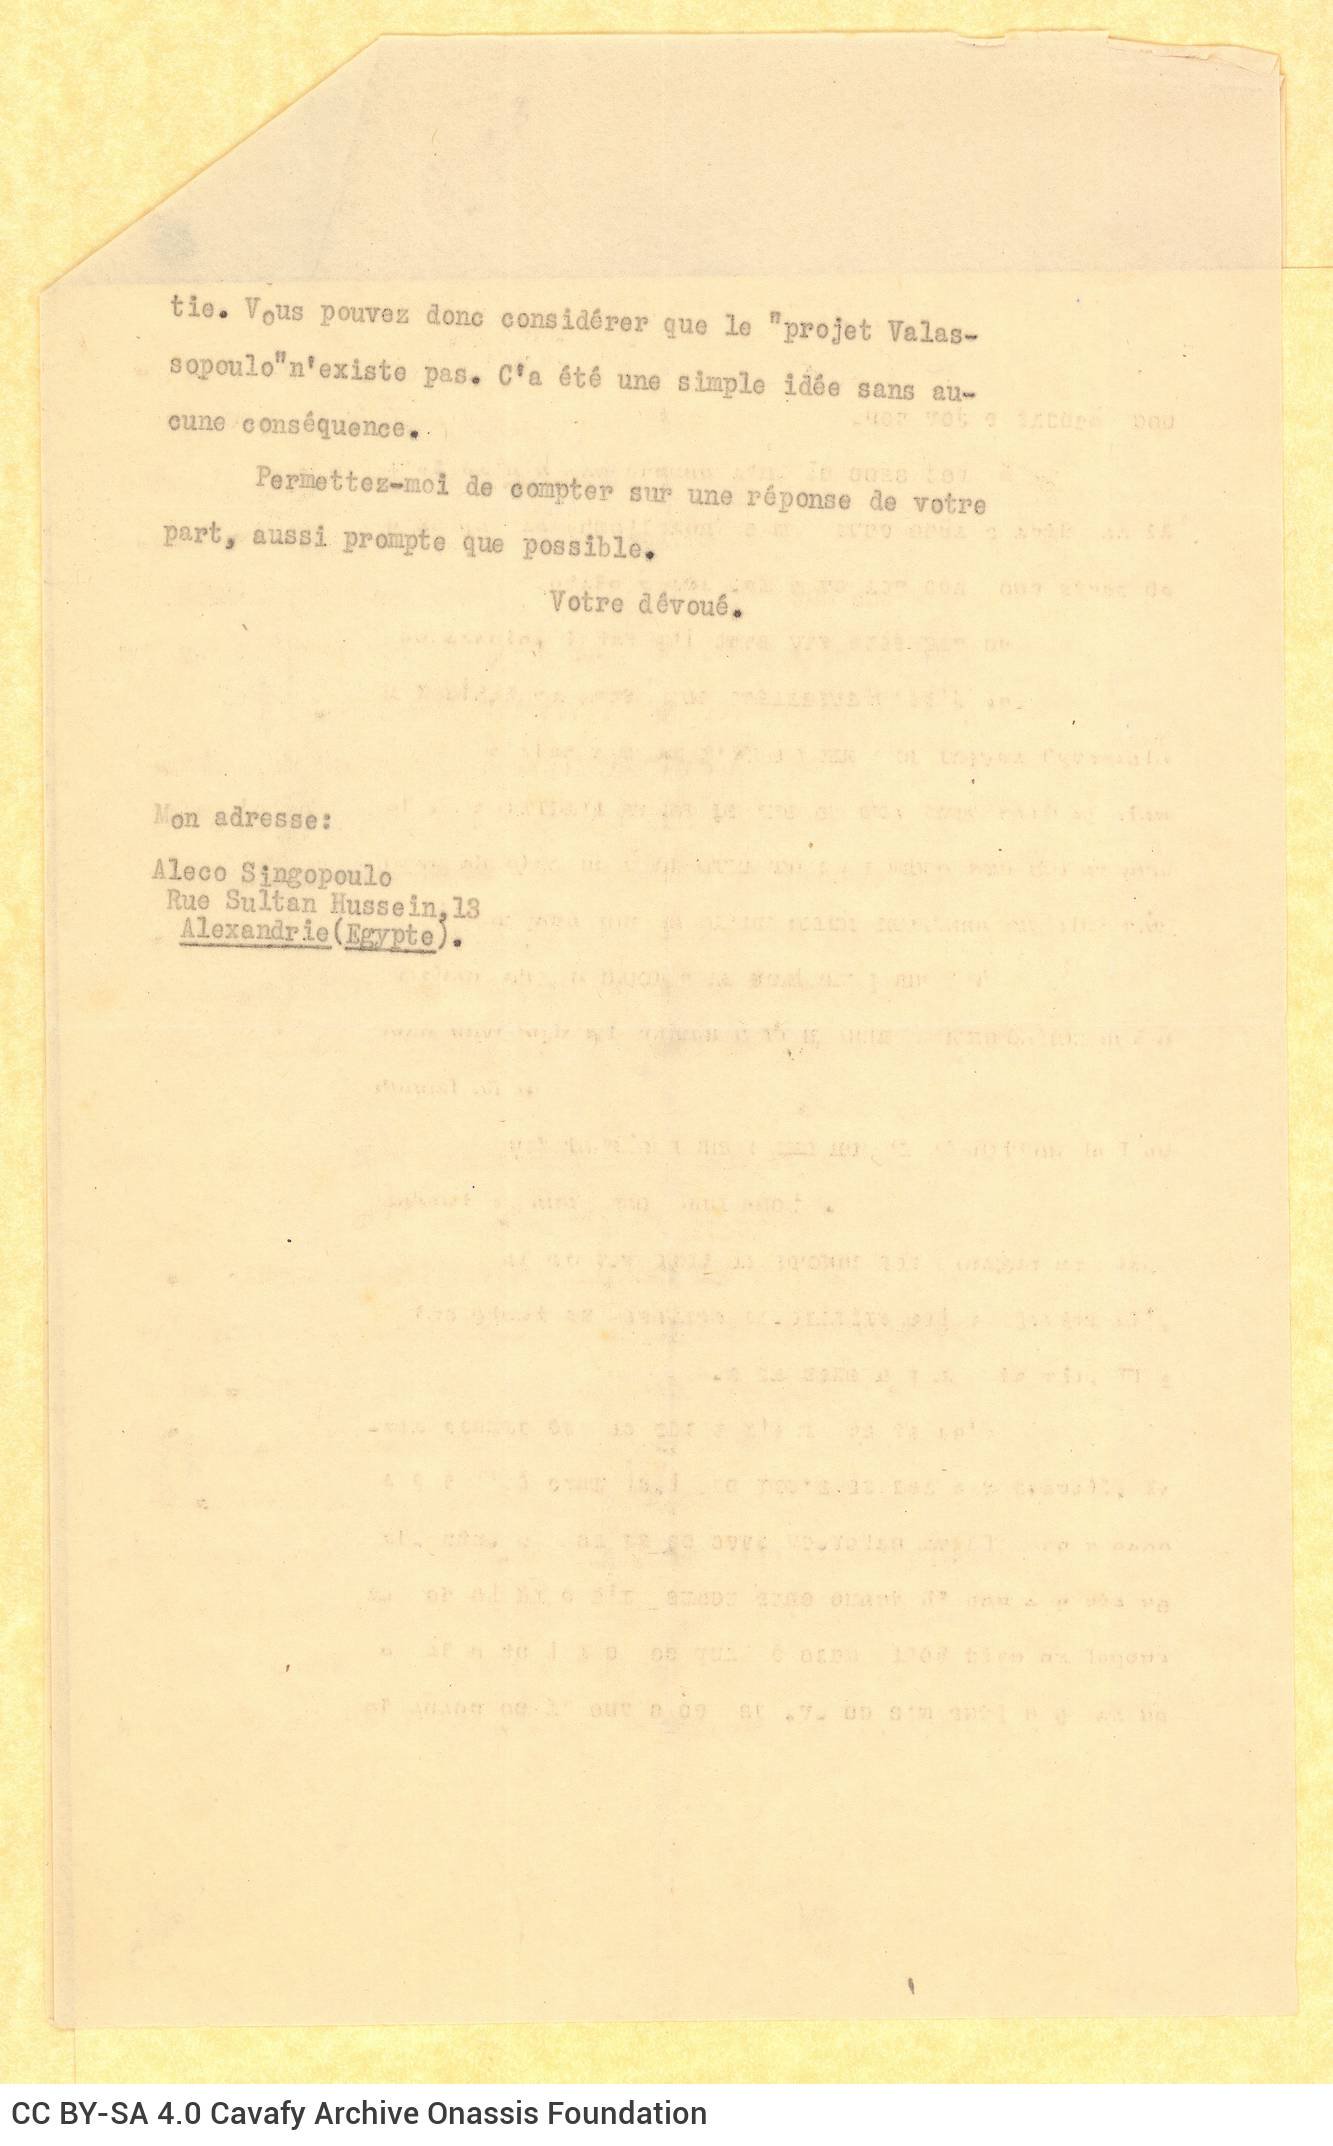 Δακτυλόγραφο αντίγραφο επιστολής του Αλέκου Σεγκόπουλου προς τον Ε.